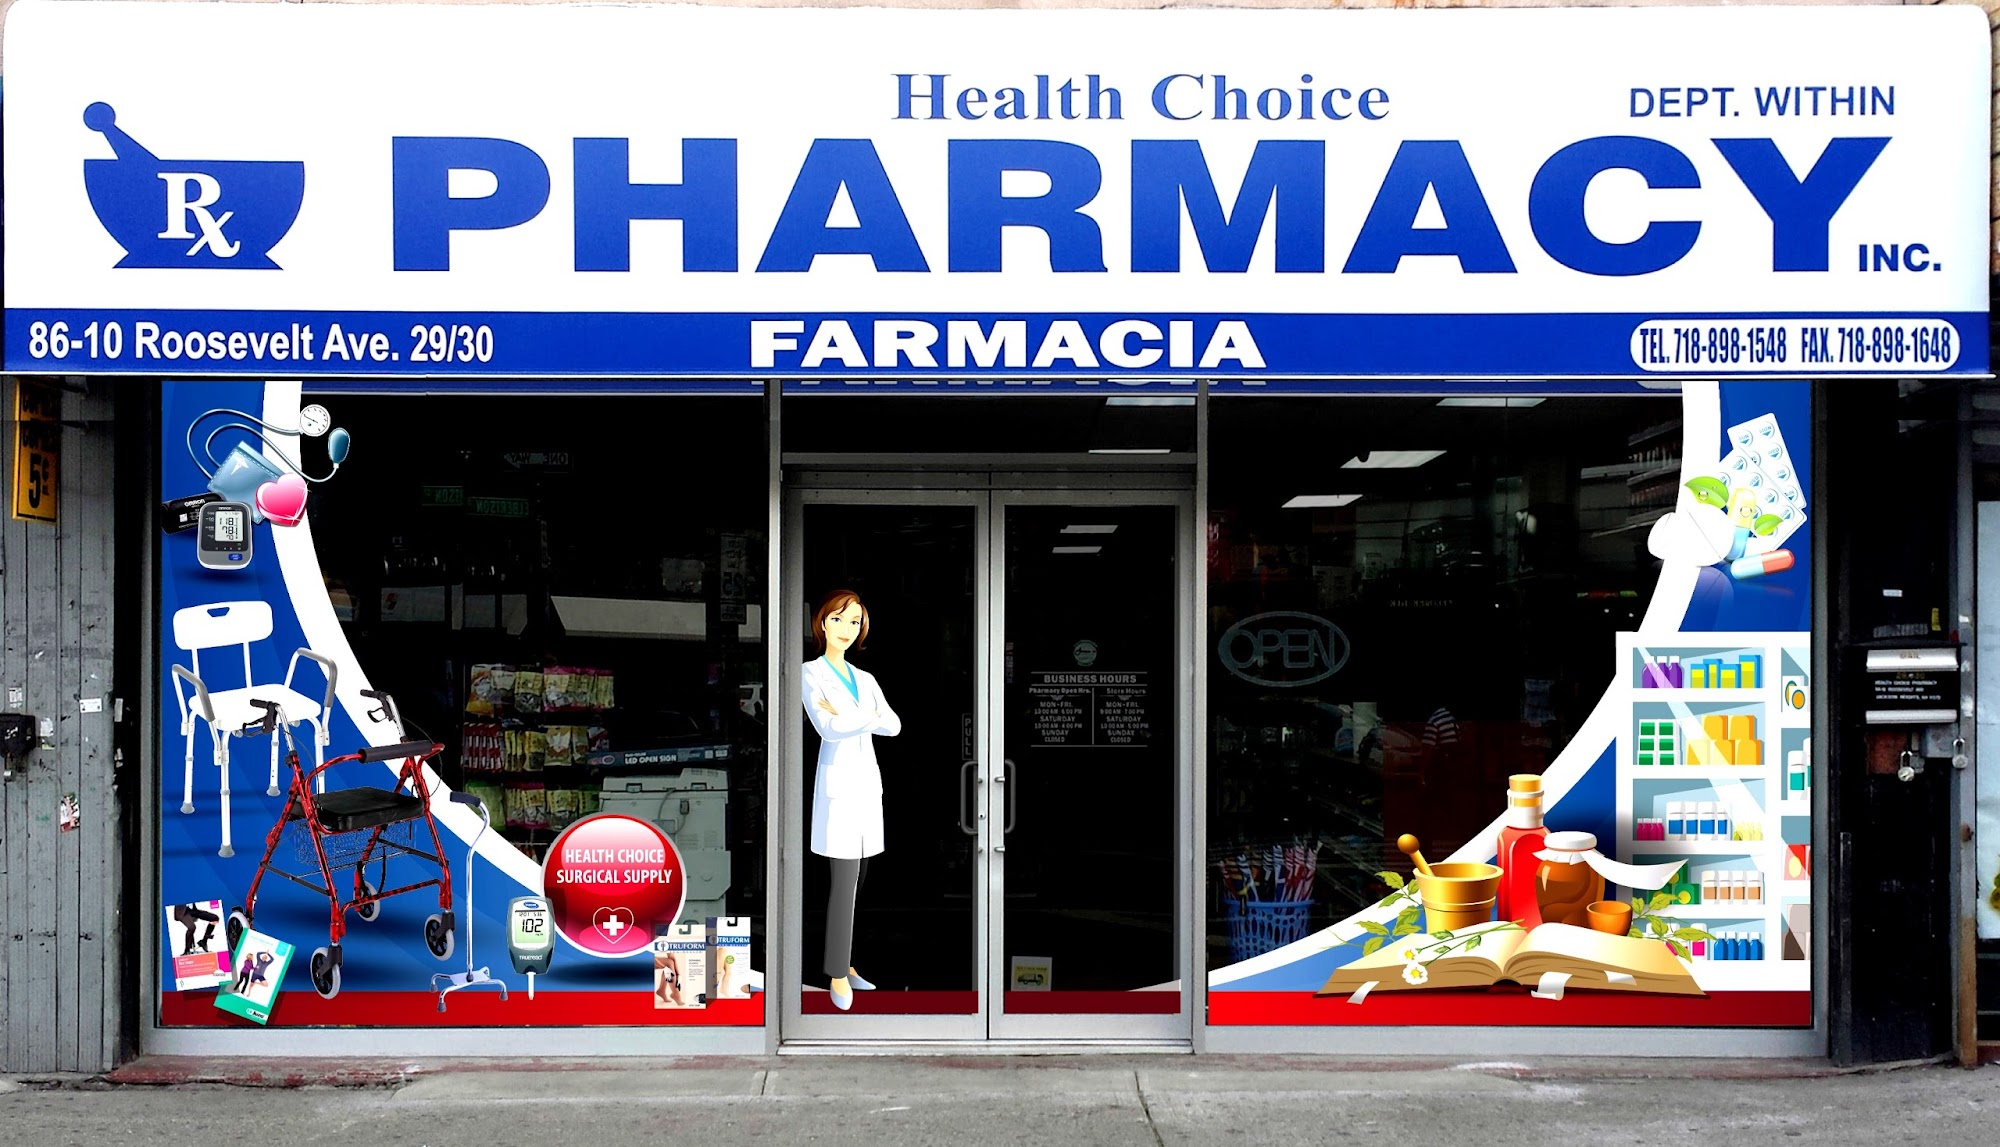 Health Choice Pharmacy